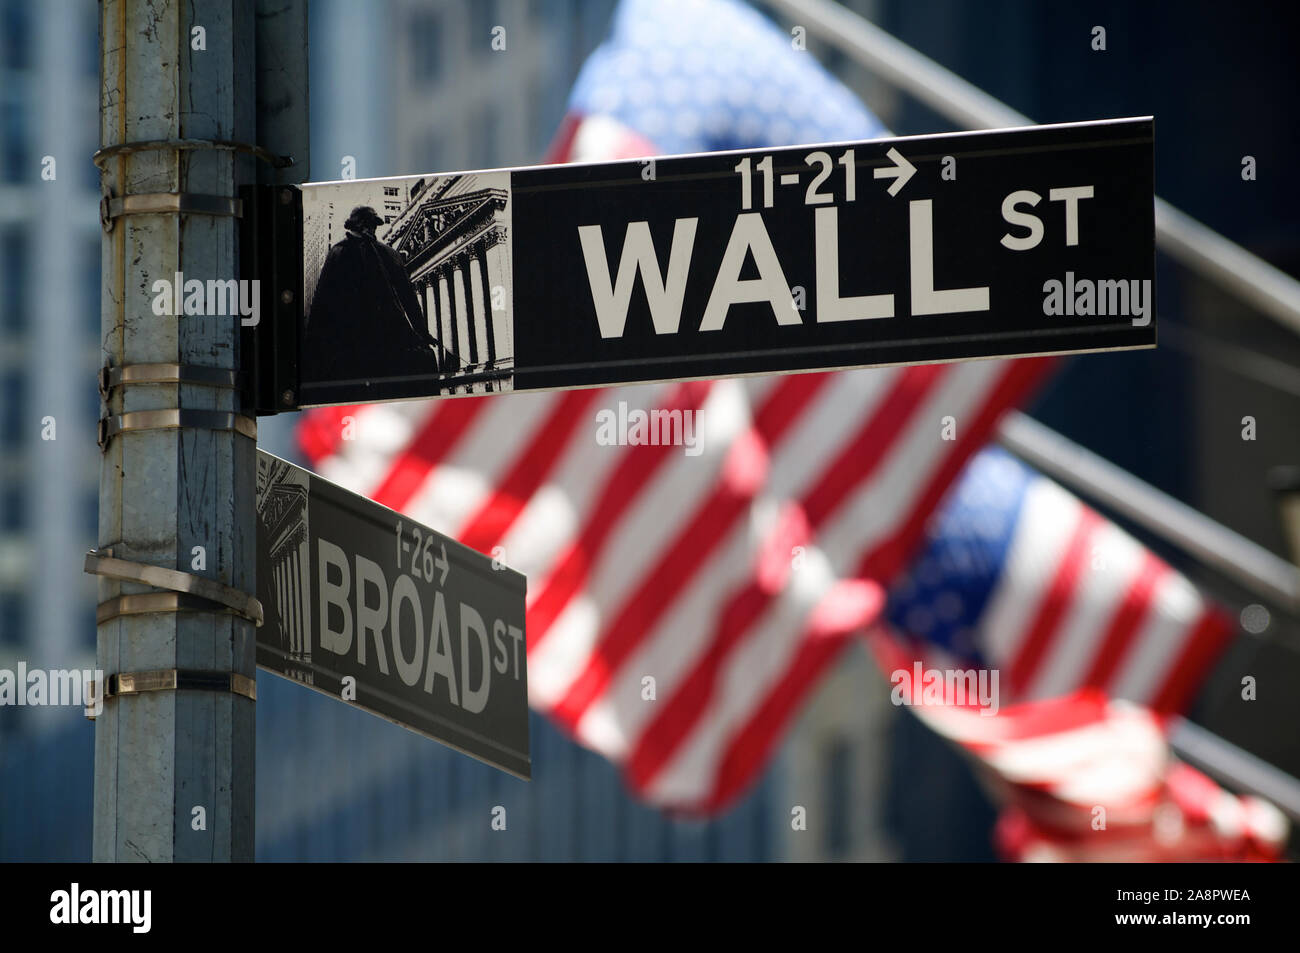 La CIUDAD DE NUEVA YORK - Agosto 7, 2010: Las banderas americanas vuelan detrás de un letrero para Wall Street, símbolo del capitalismo americano. Foto de stock